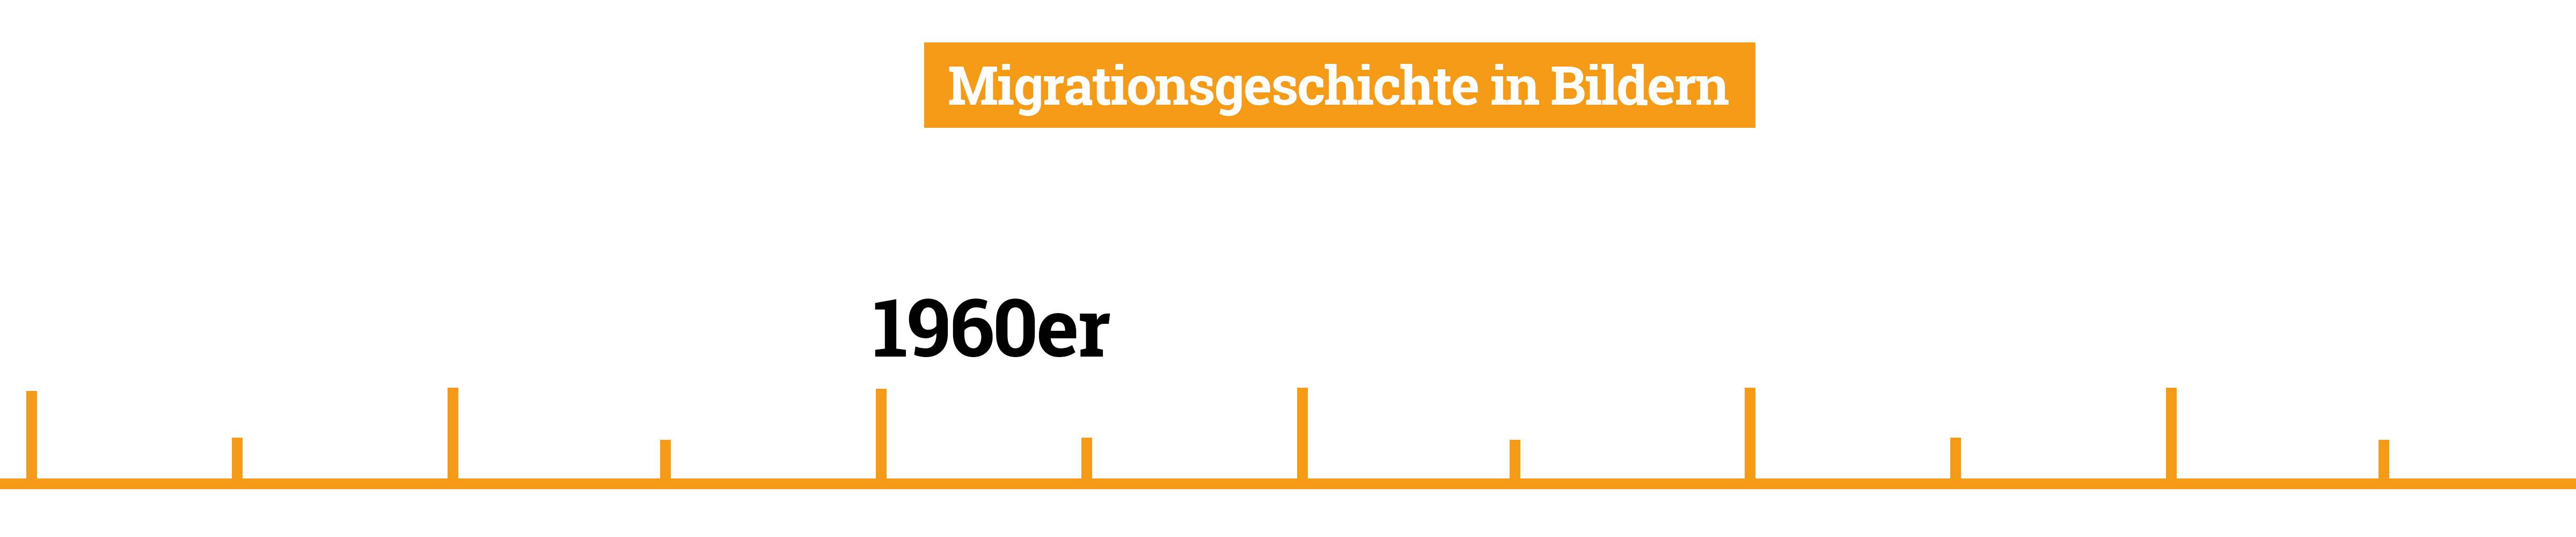 Motivserie "Migrationsgeschichte in Bildern"